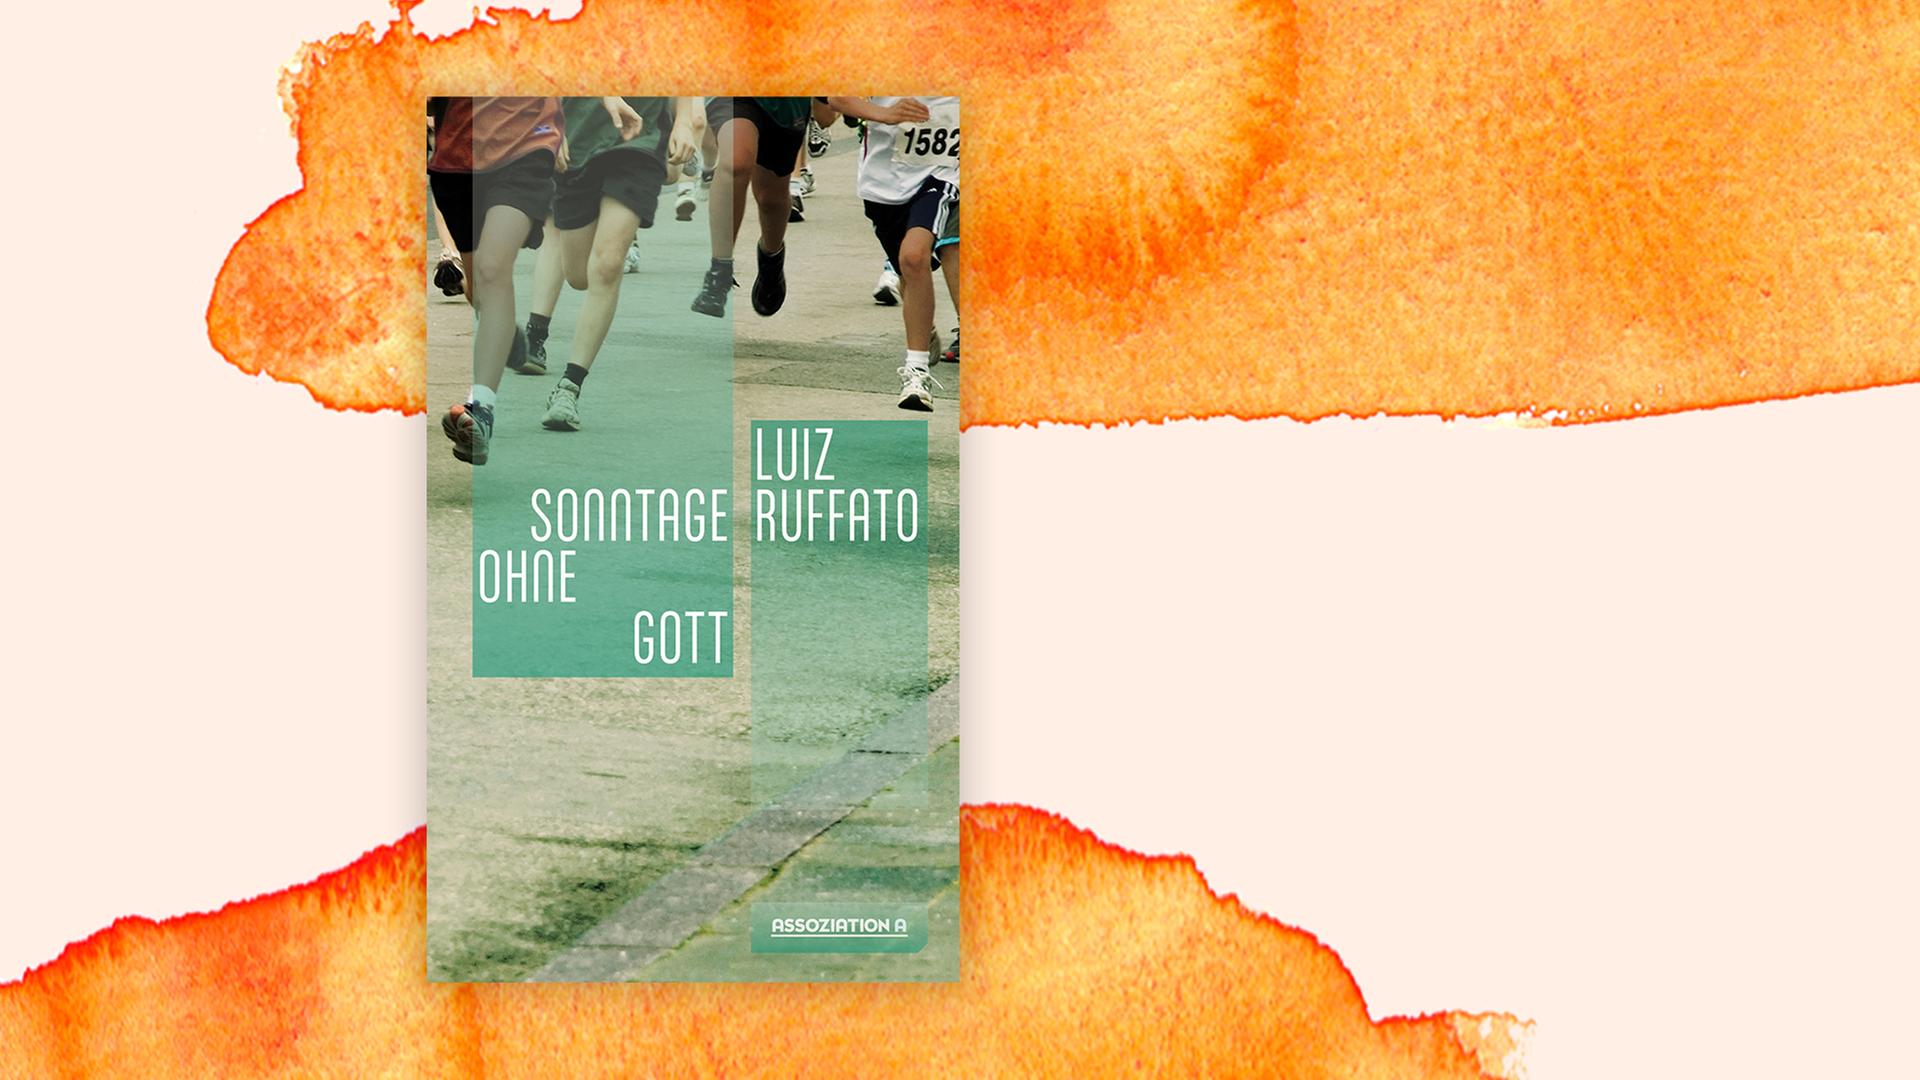 Das Cover des Buchs "Sonntage ohne Gott" von Luiz Ruffato auf pastell farbenen Hintergrund.